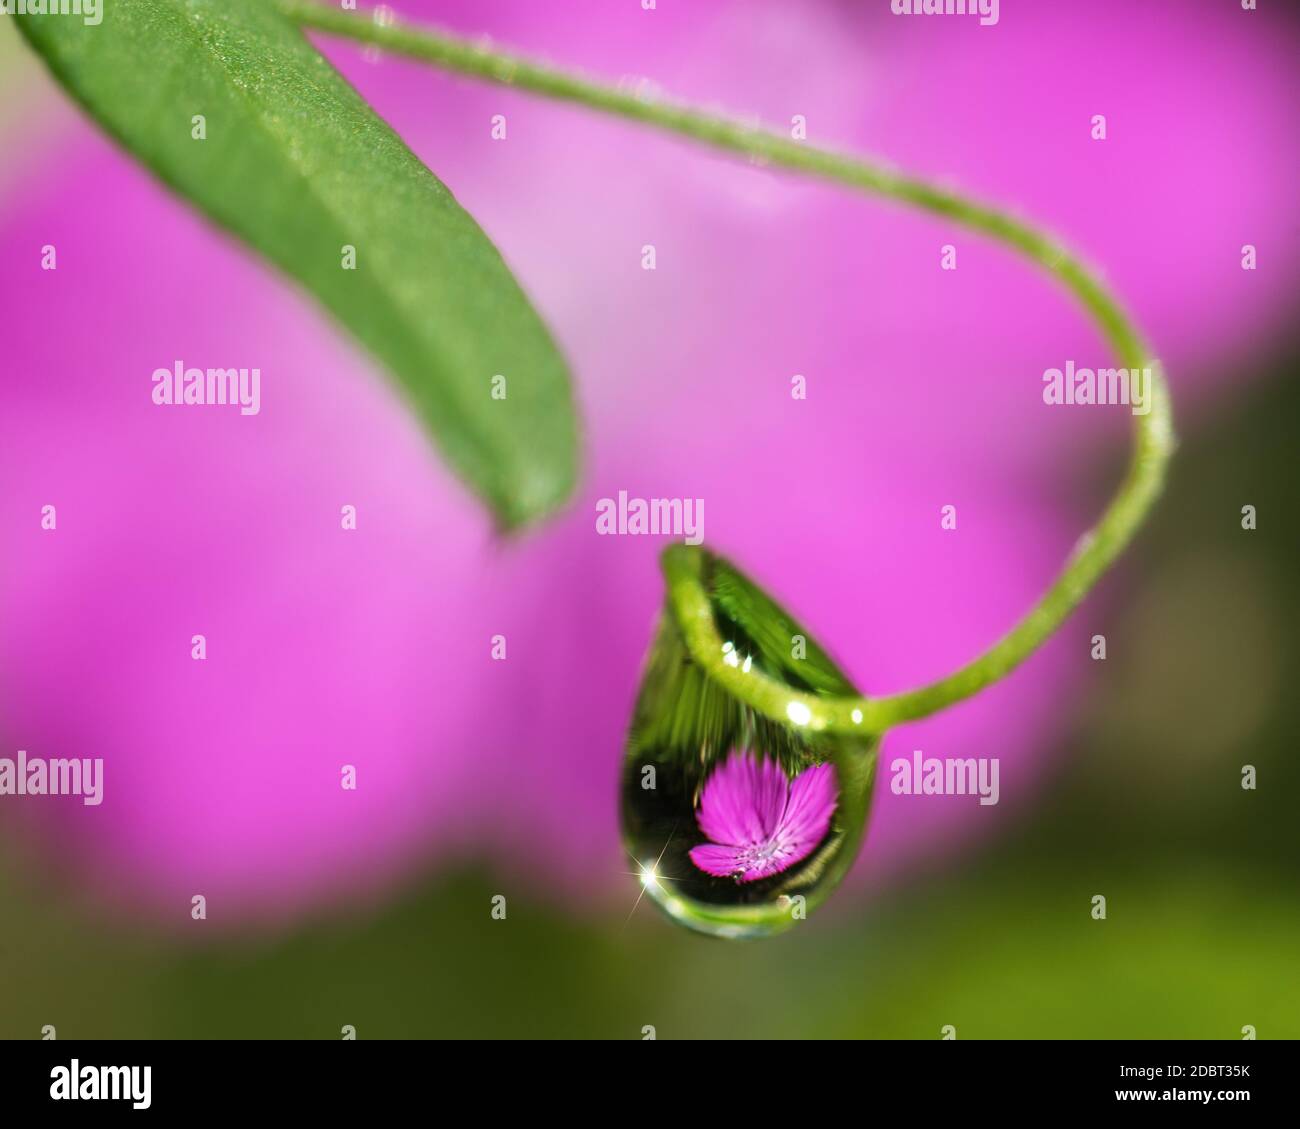 una gota de agua en el tendril de una planta con un reflejo de una flor rosa en ella Foto de stock